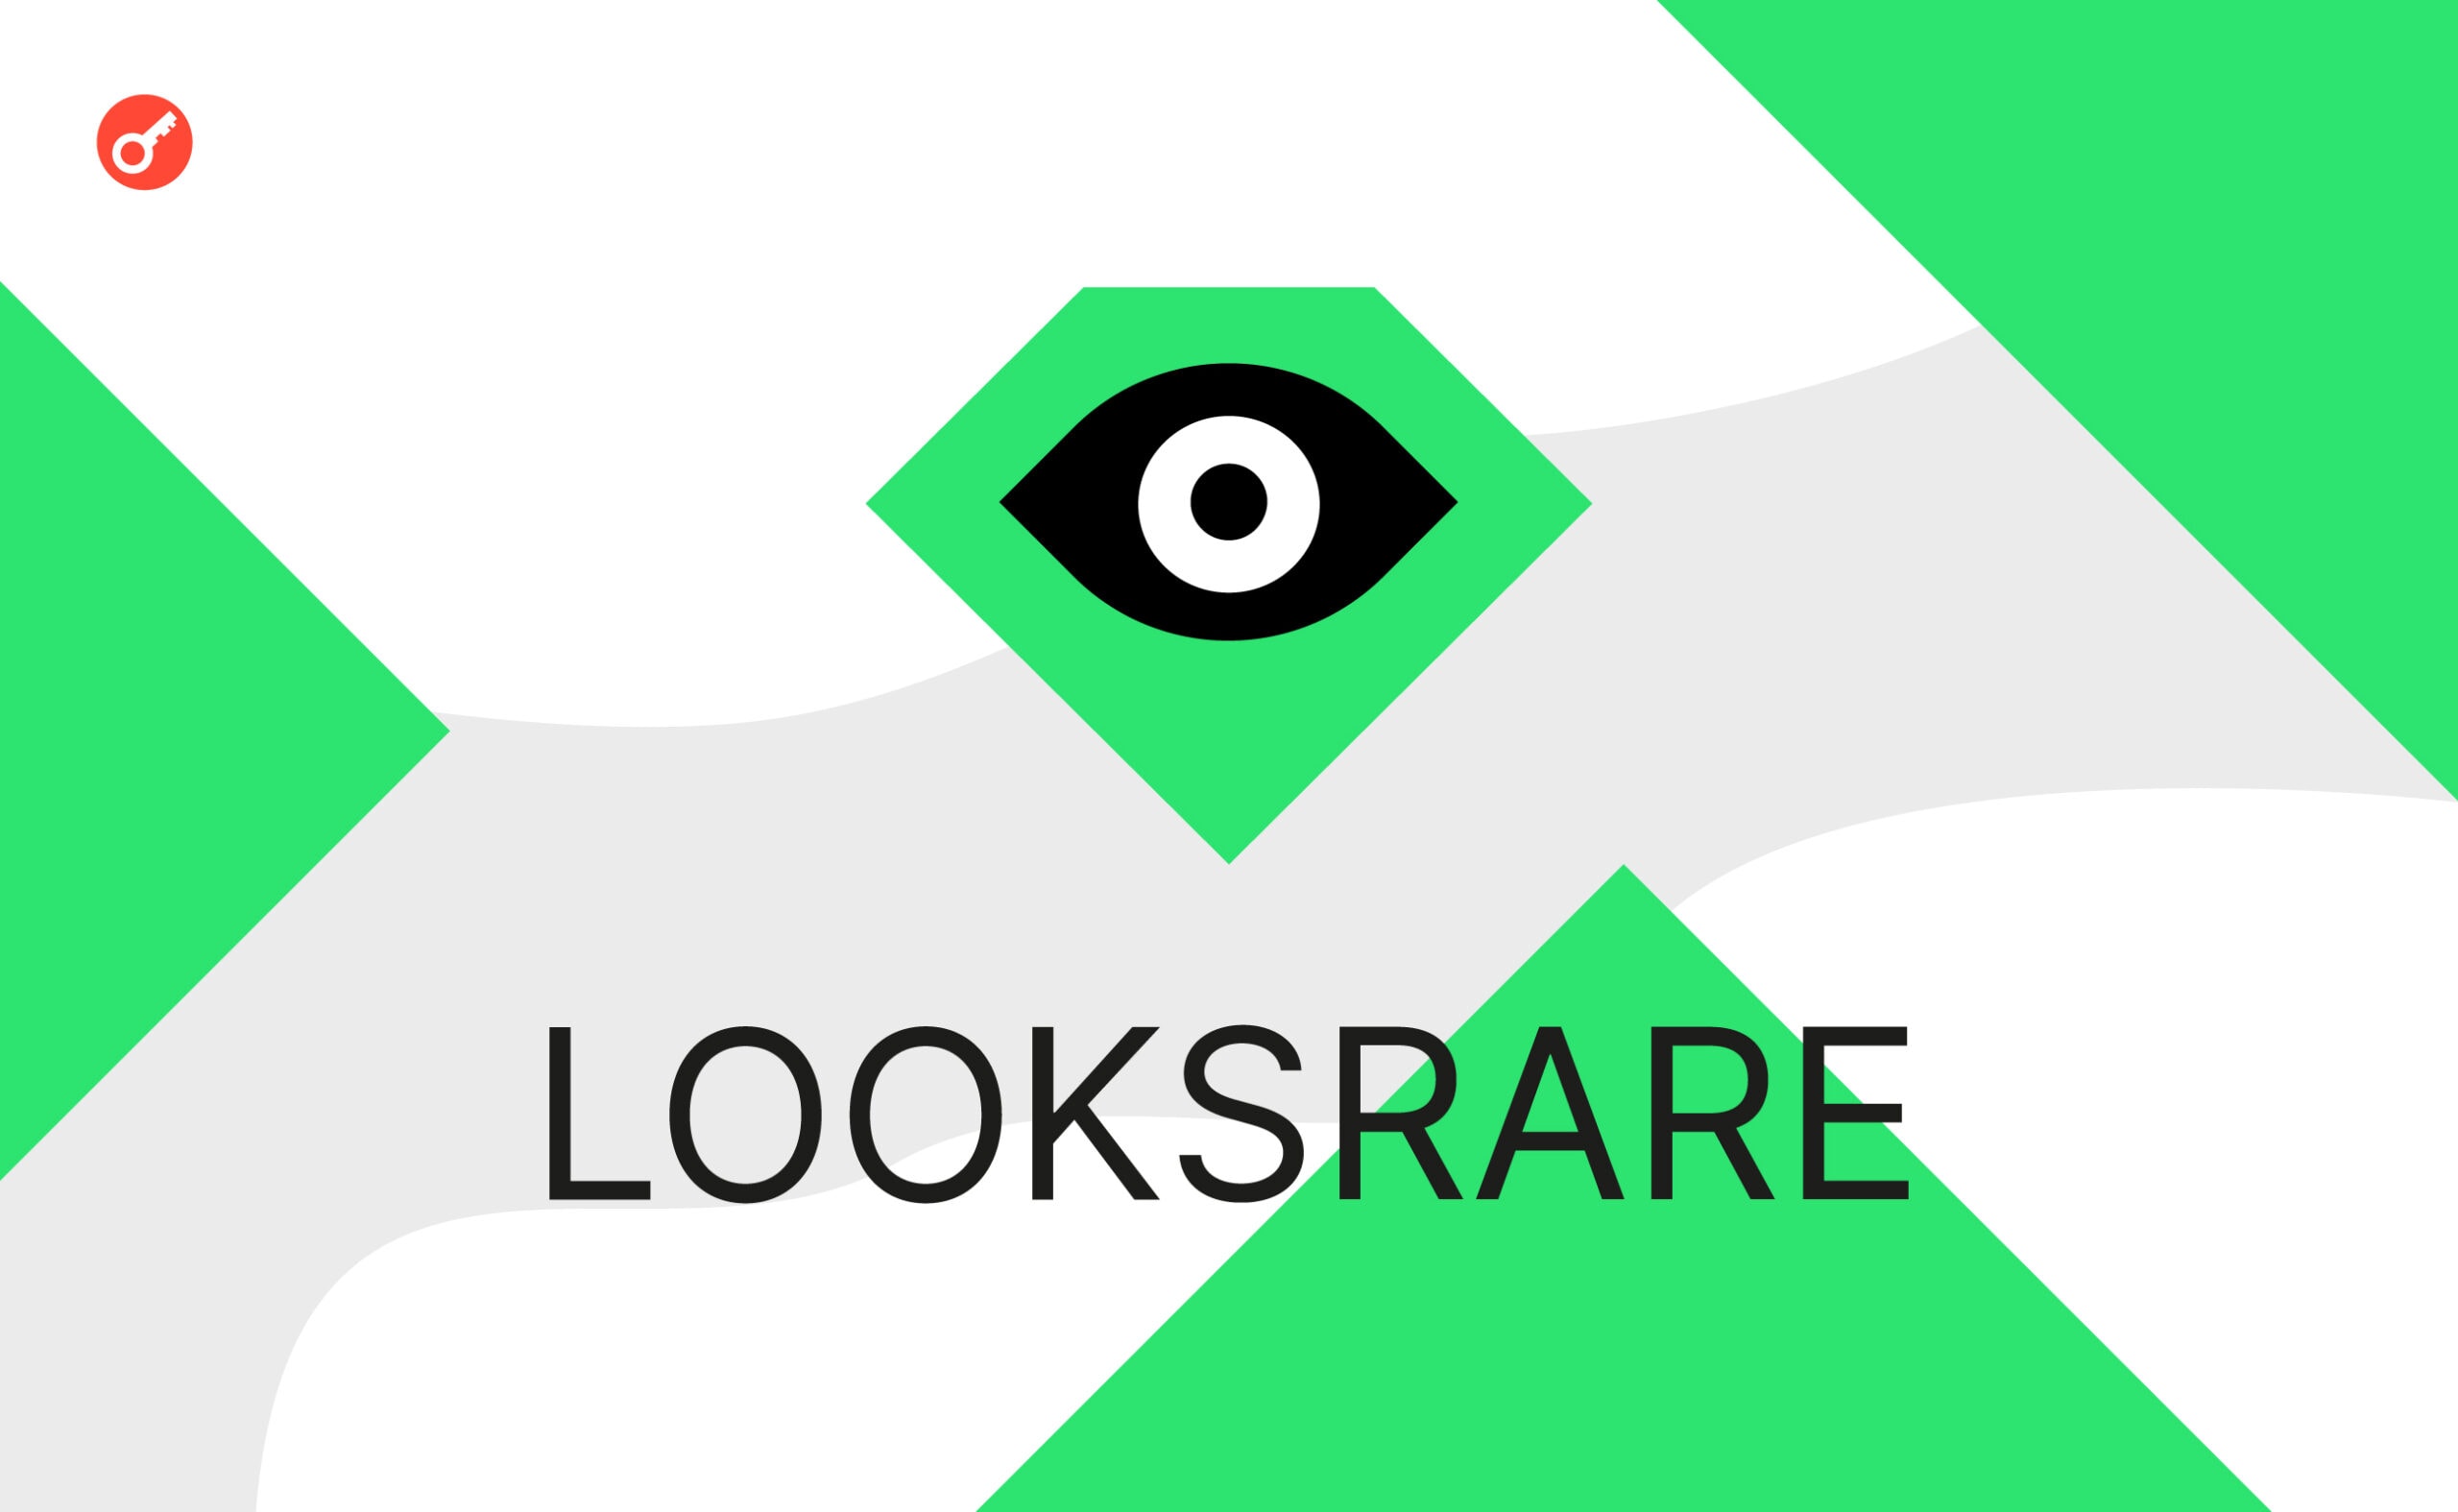 LooksRare оновили платформу: нові опції та нижча комісія. Головний колаж новини.